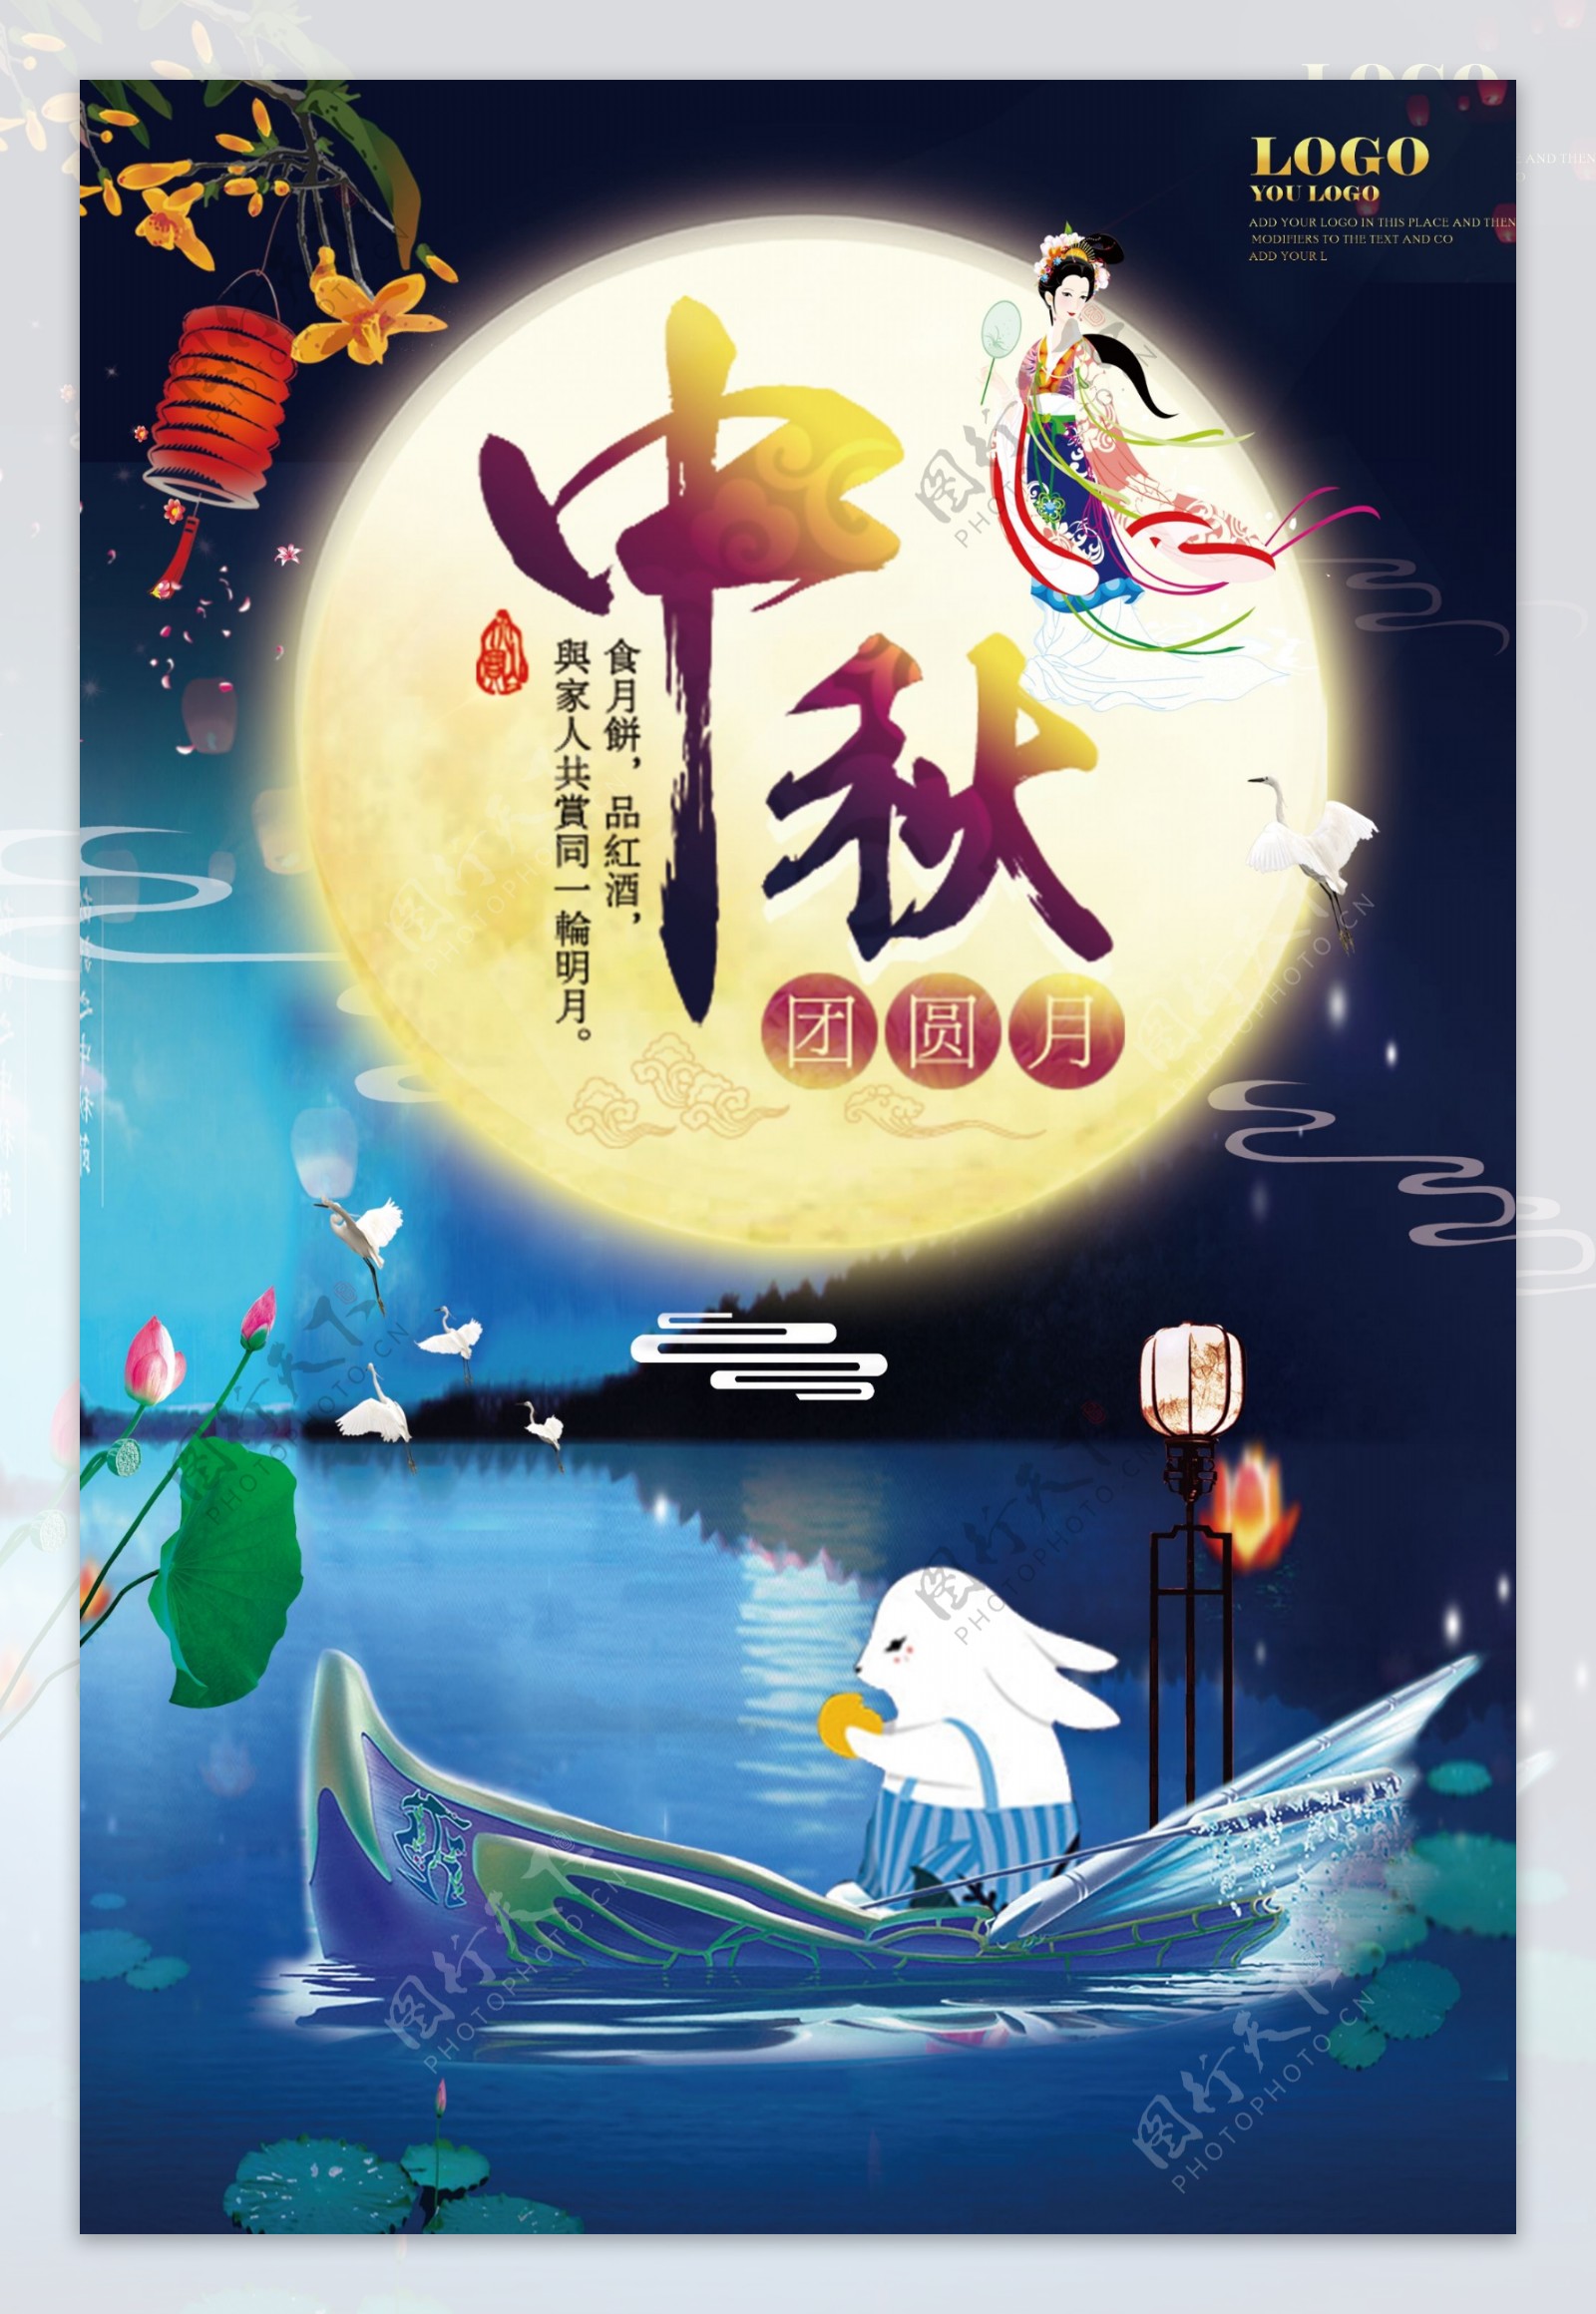 大气简约中国传统节日中秋佳节宣传海报设计